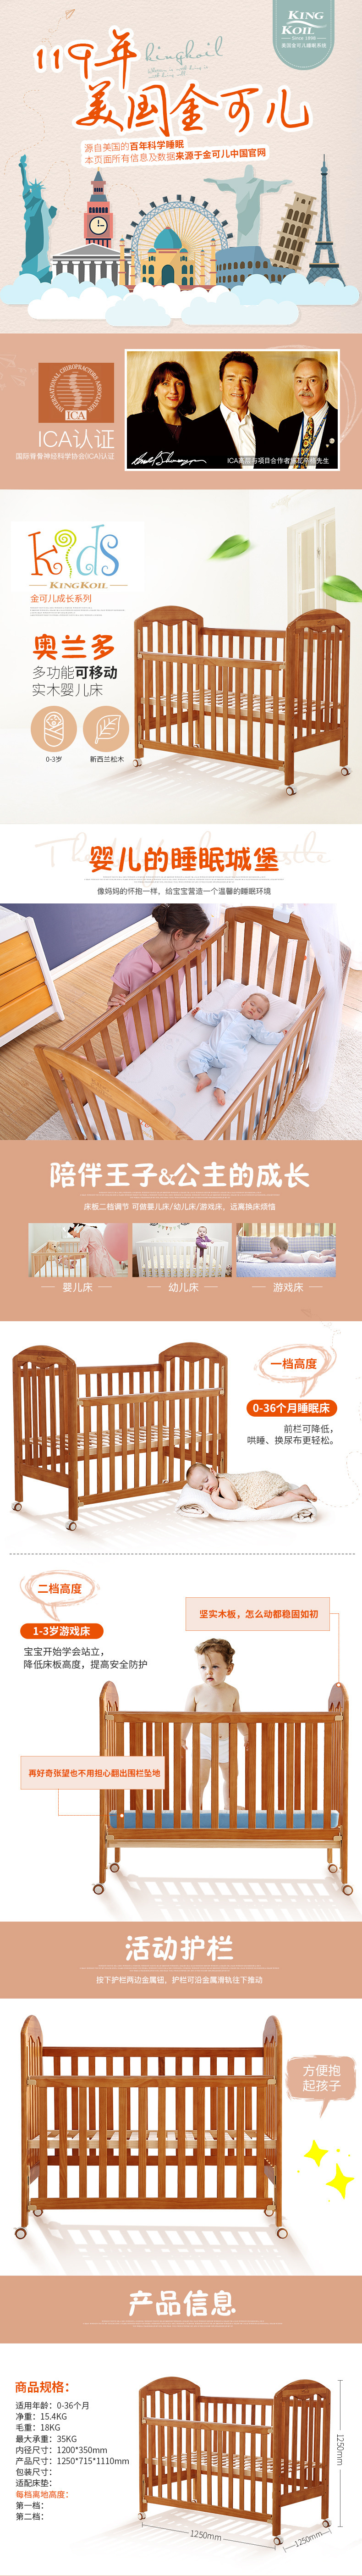 淘宝美工小桂多功能可移动实木婴儿床详情页作品